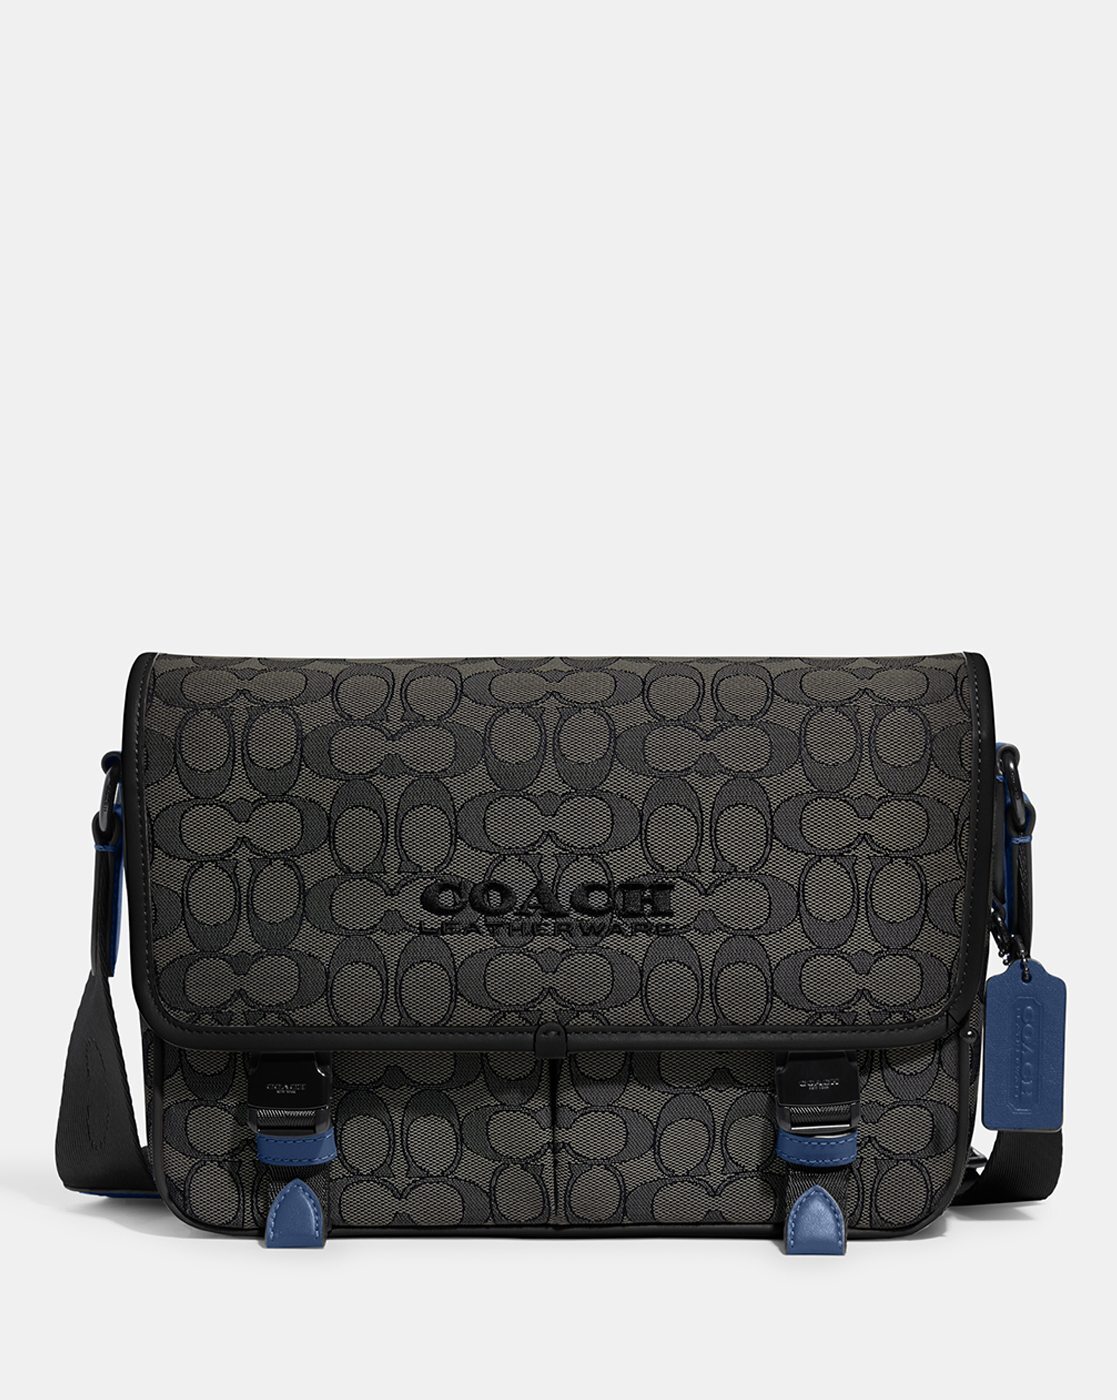 Coach, Bags, Final Sale Coach Signature Voyager Messenger Bag